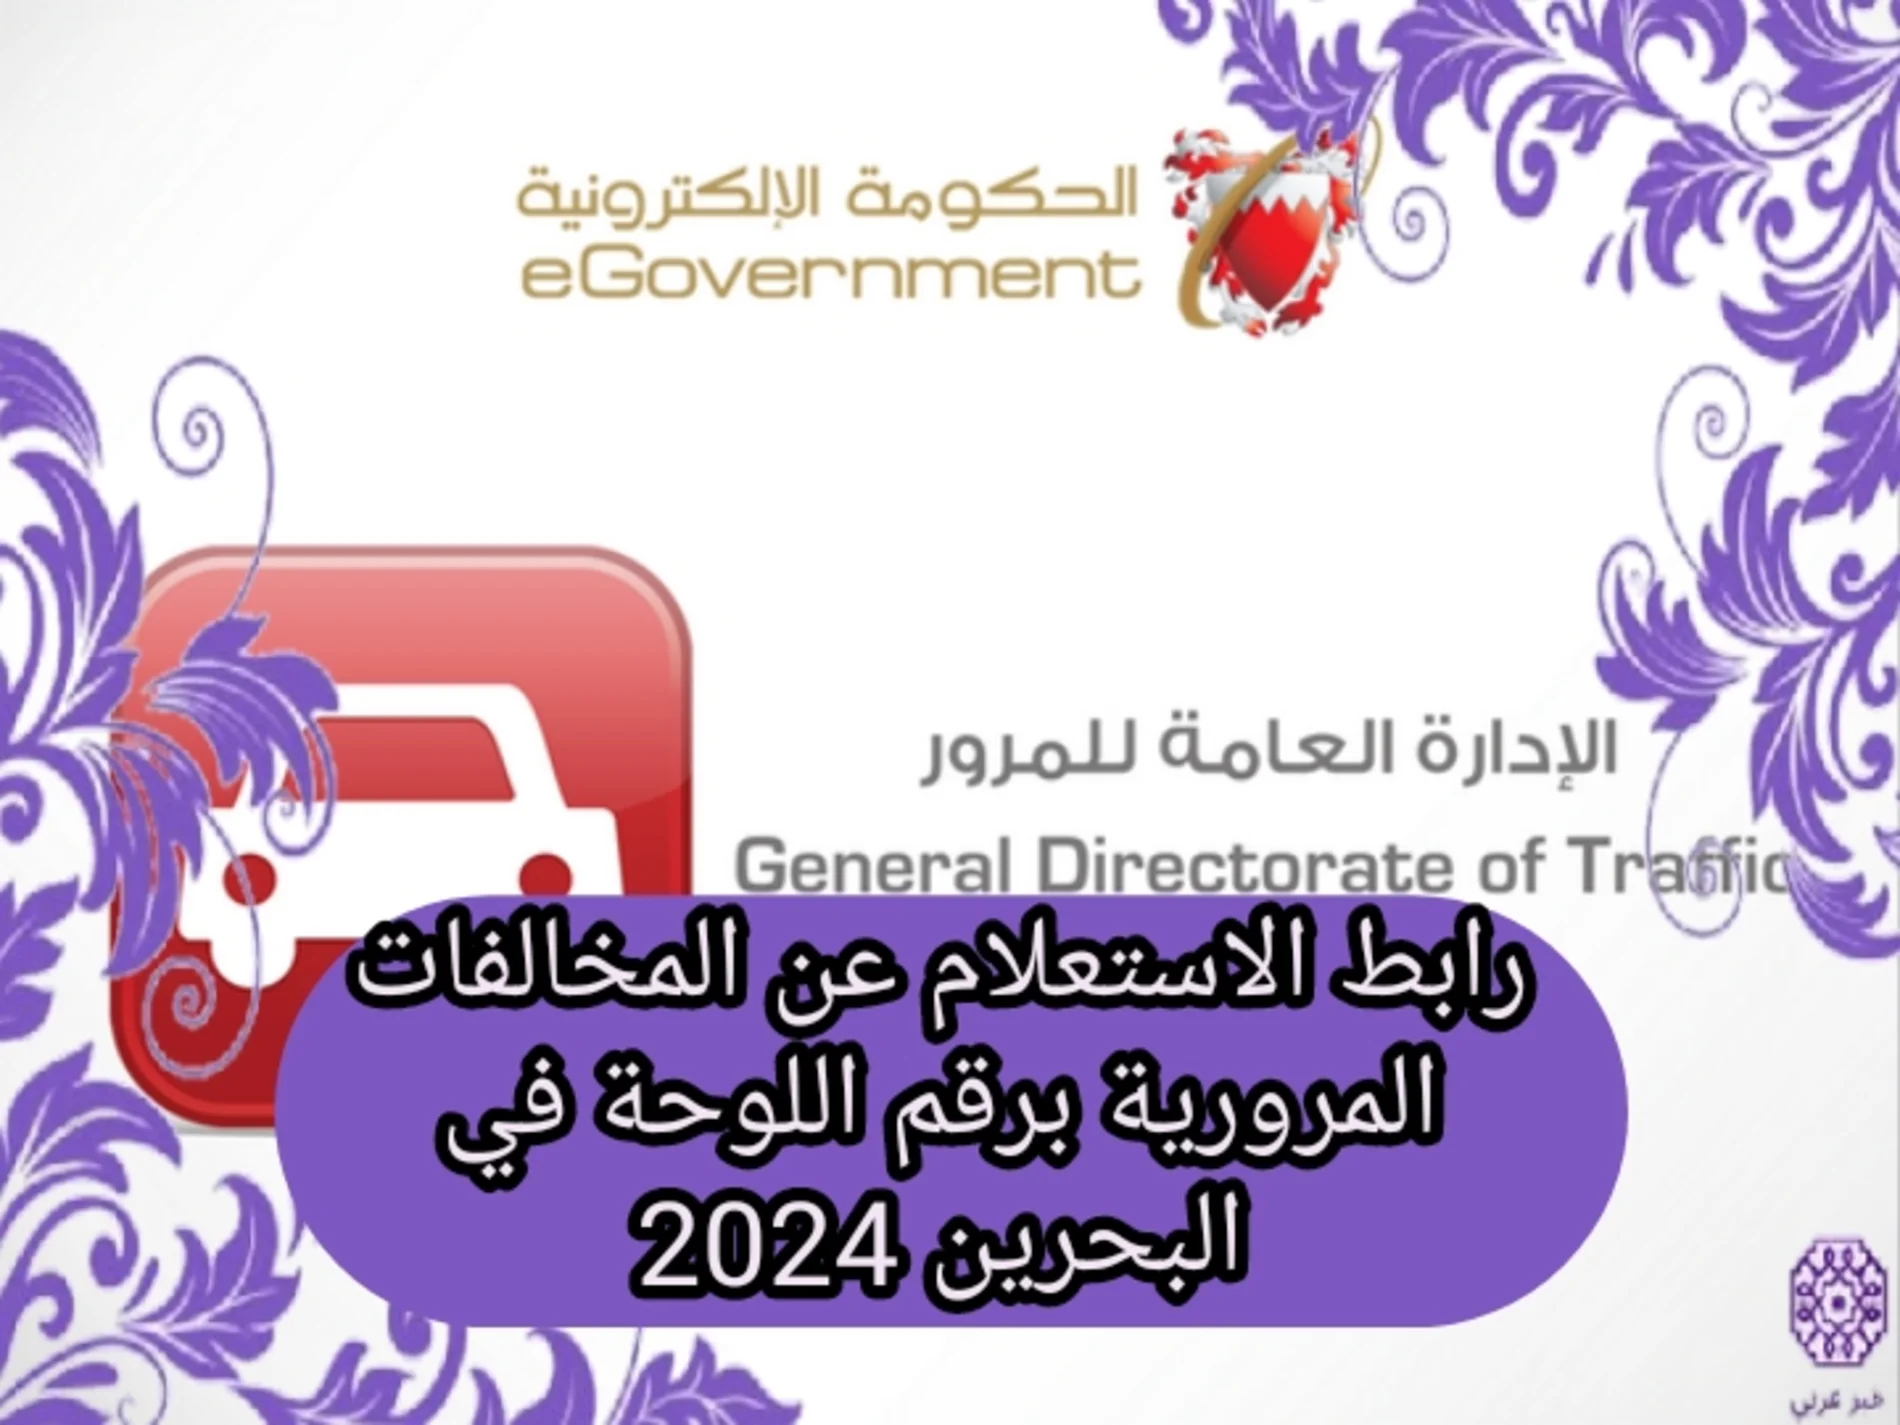 رابط الاستعلام عن المخالفات المرورية برقم اللوحة في البحرين 2024